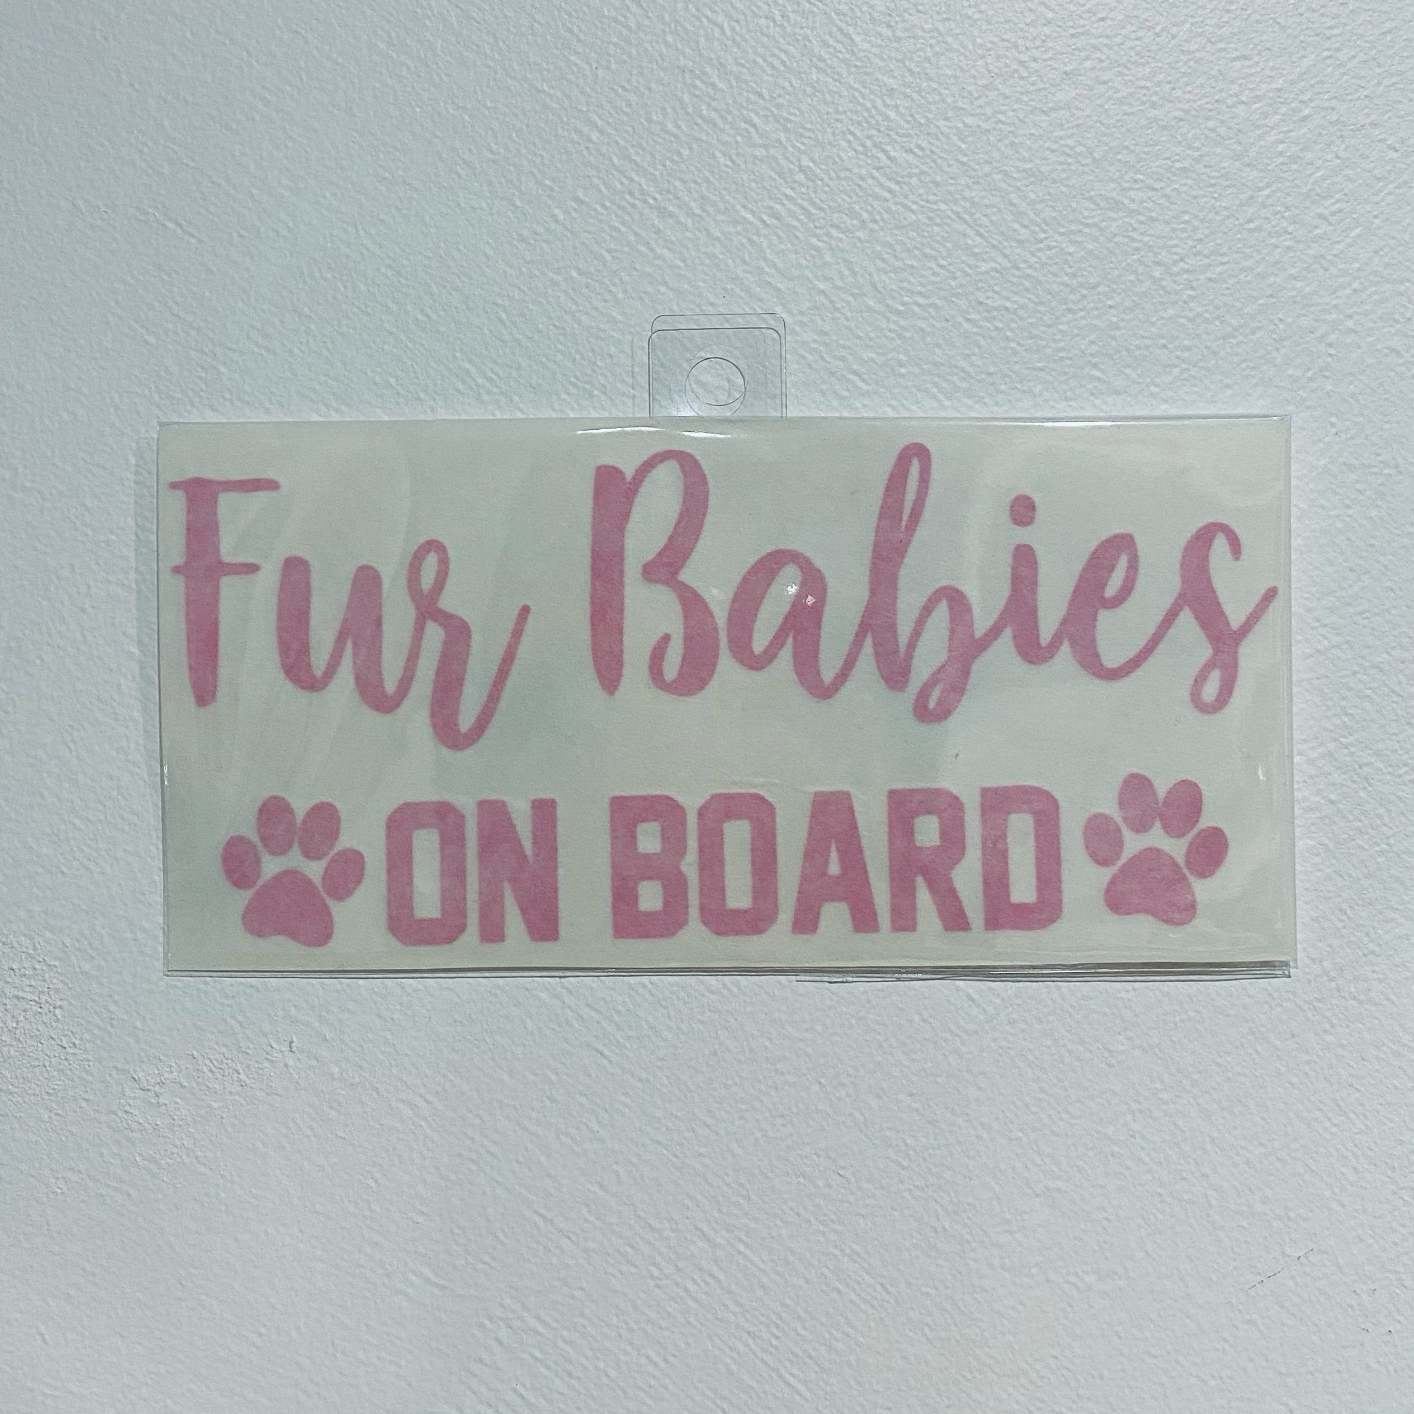 Pink Fur Babies On Board Bumper Sticker